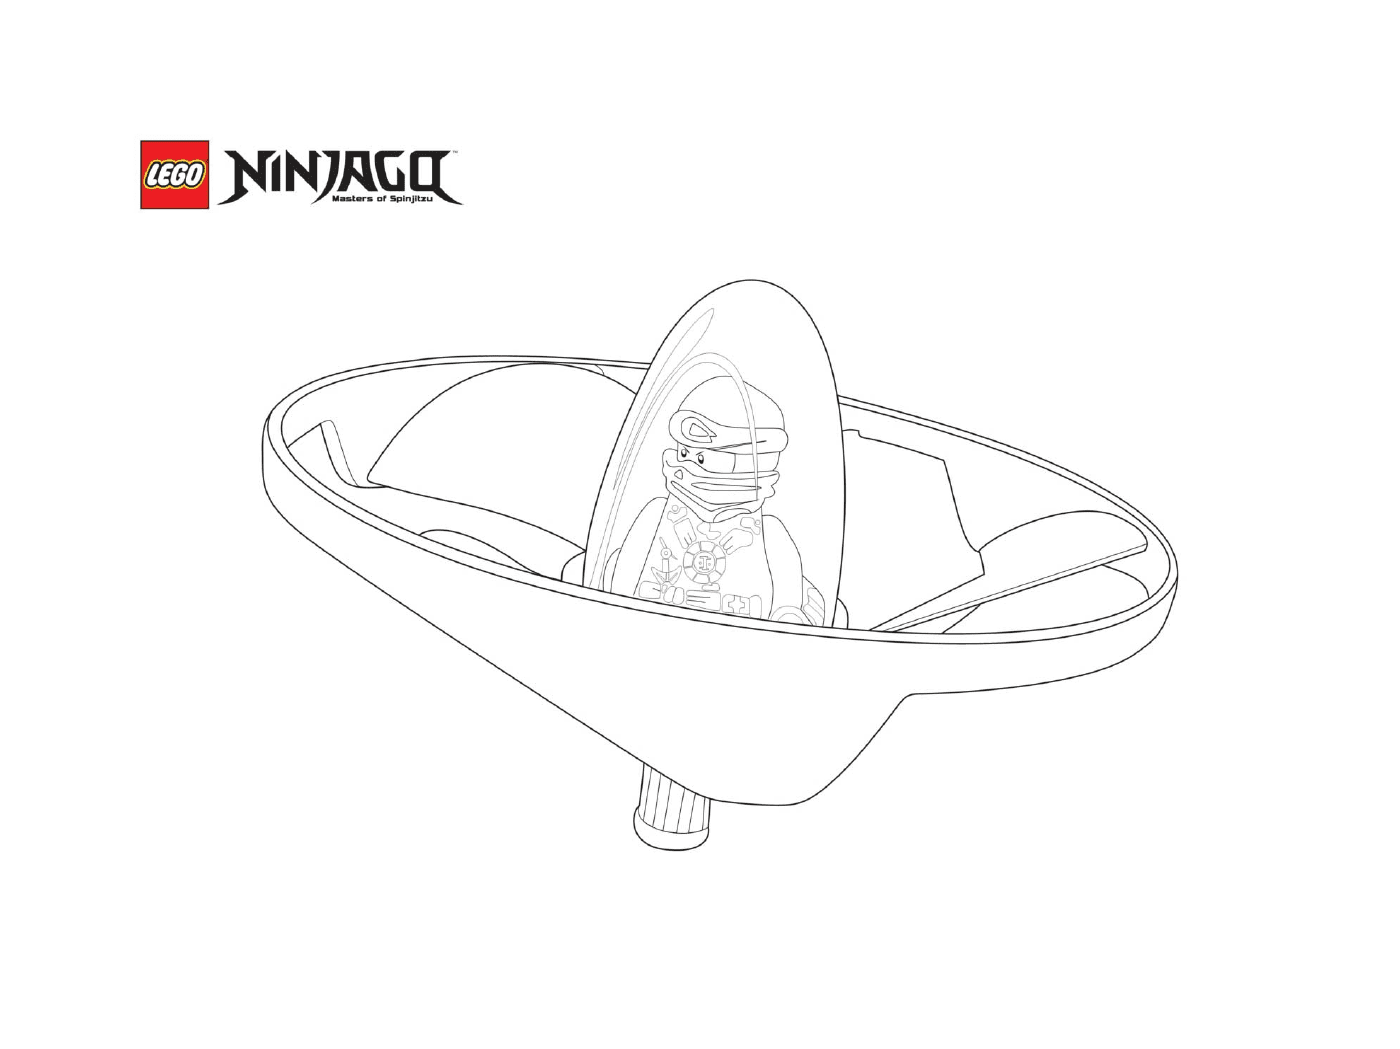   Simple vaisseau ninjago 